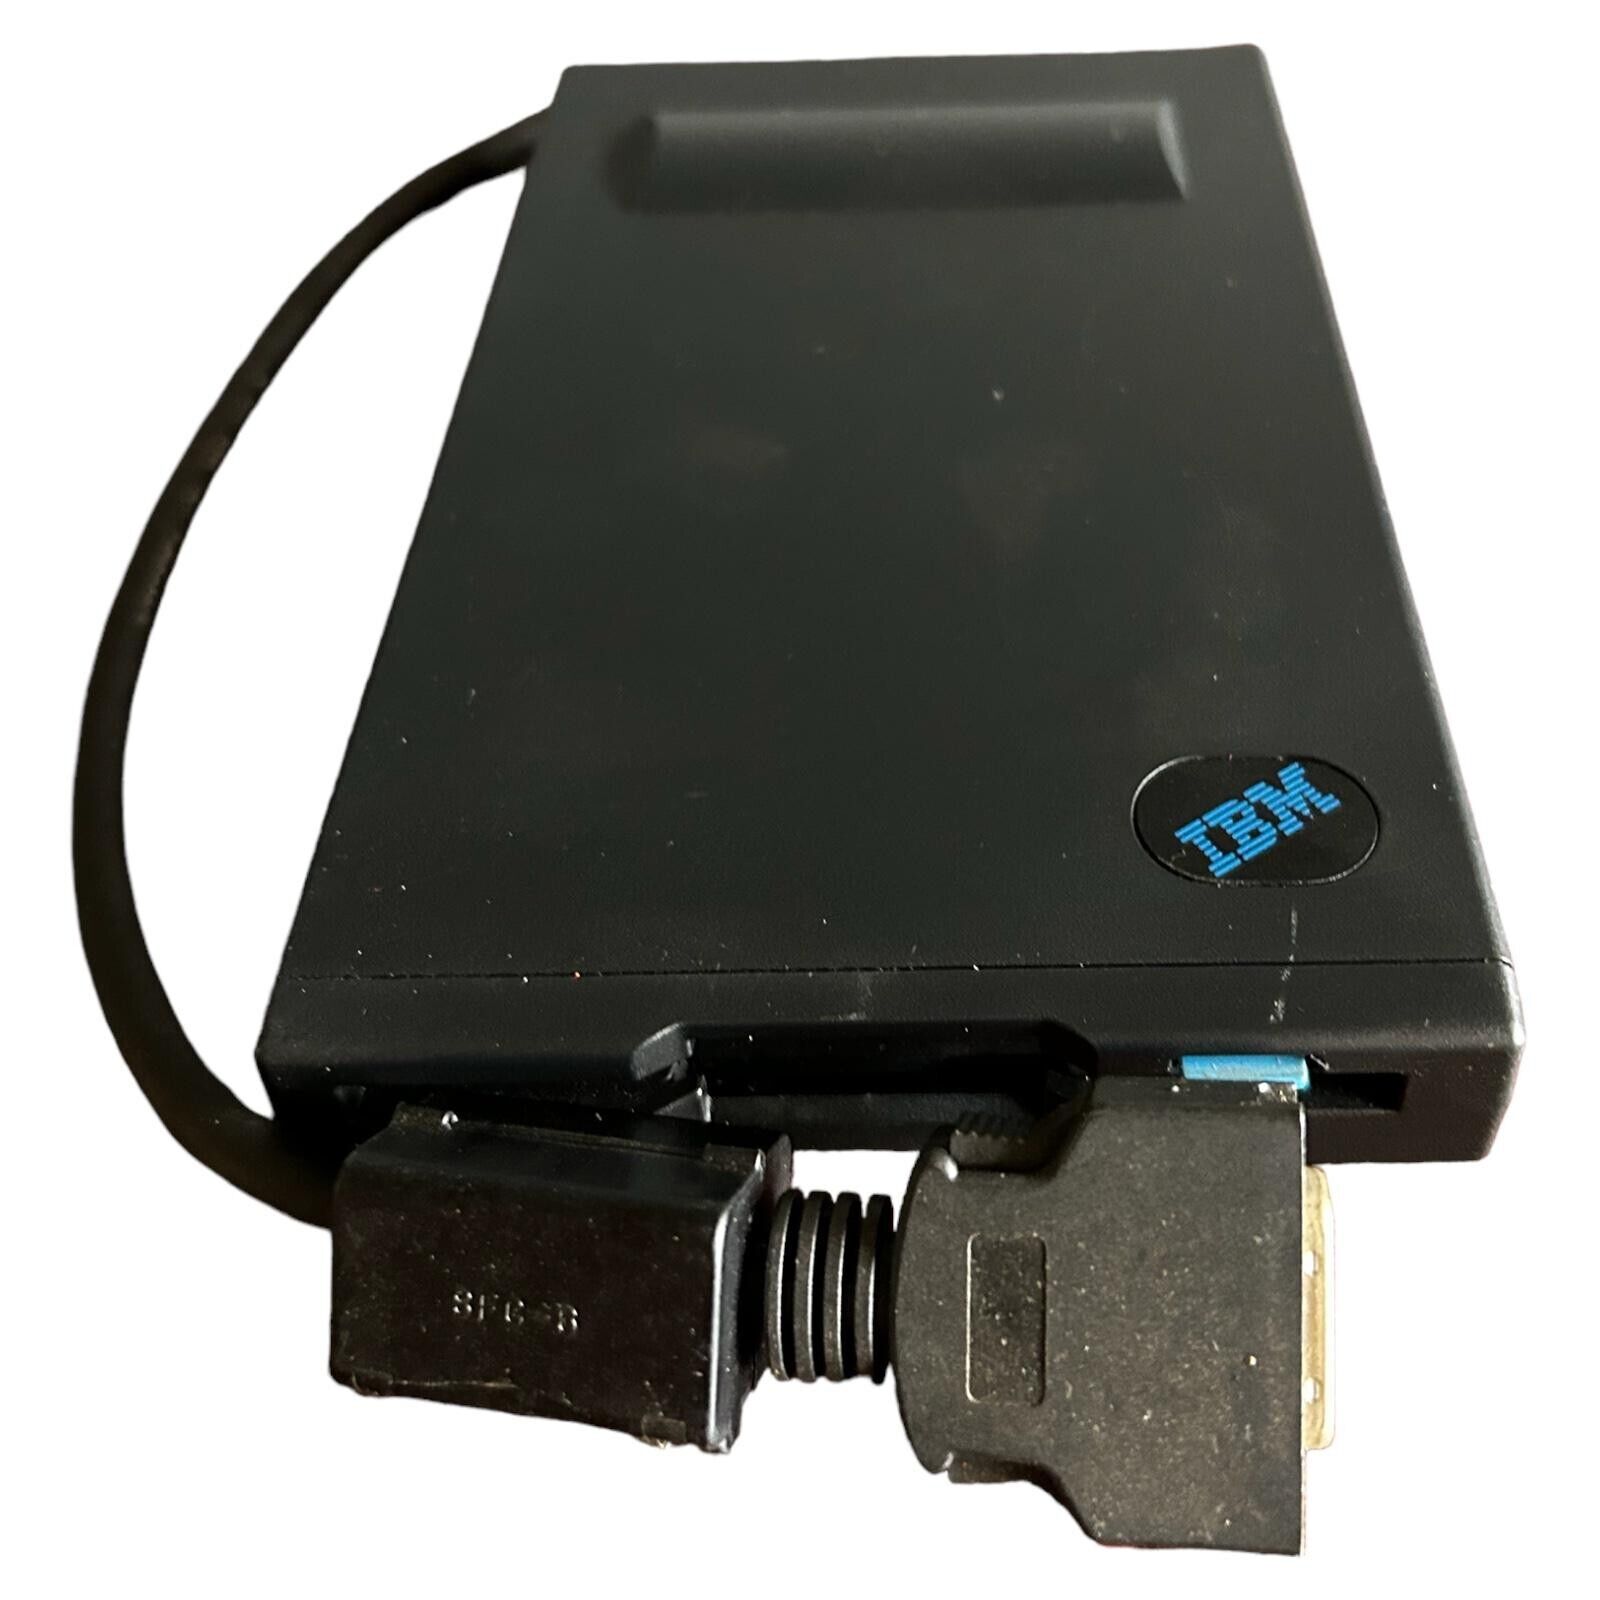 Vintage IBM External USB Floppy Disk Drive P/N 46H5749 - Used